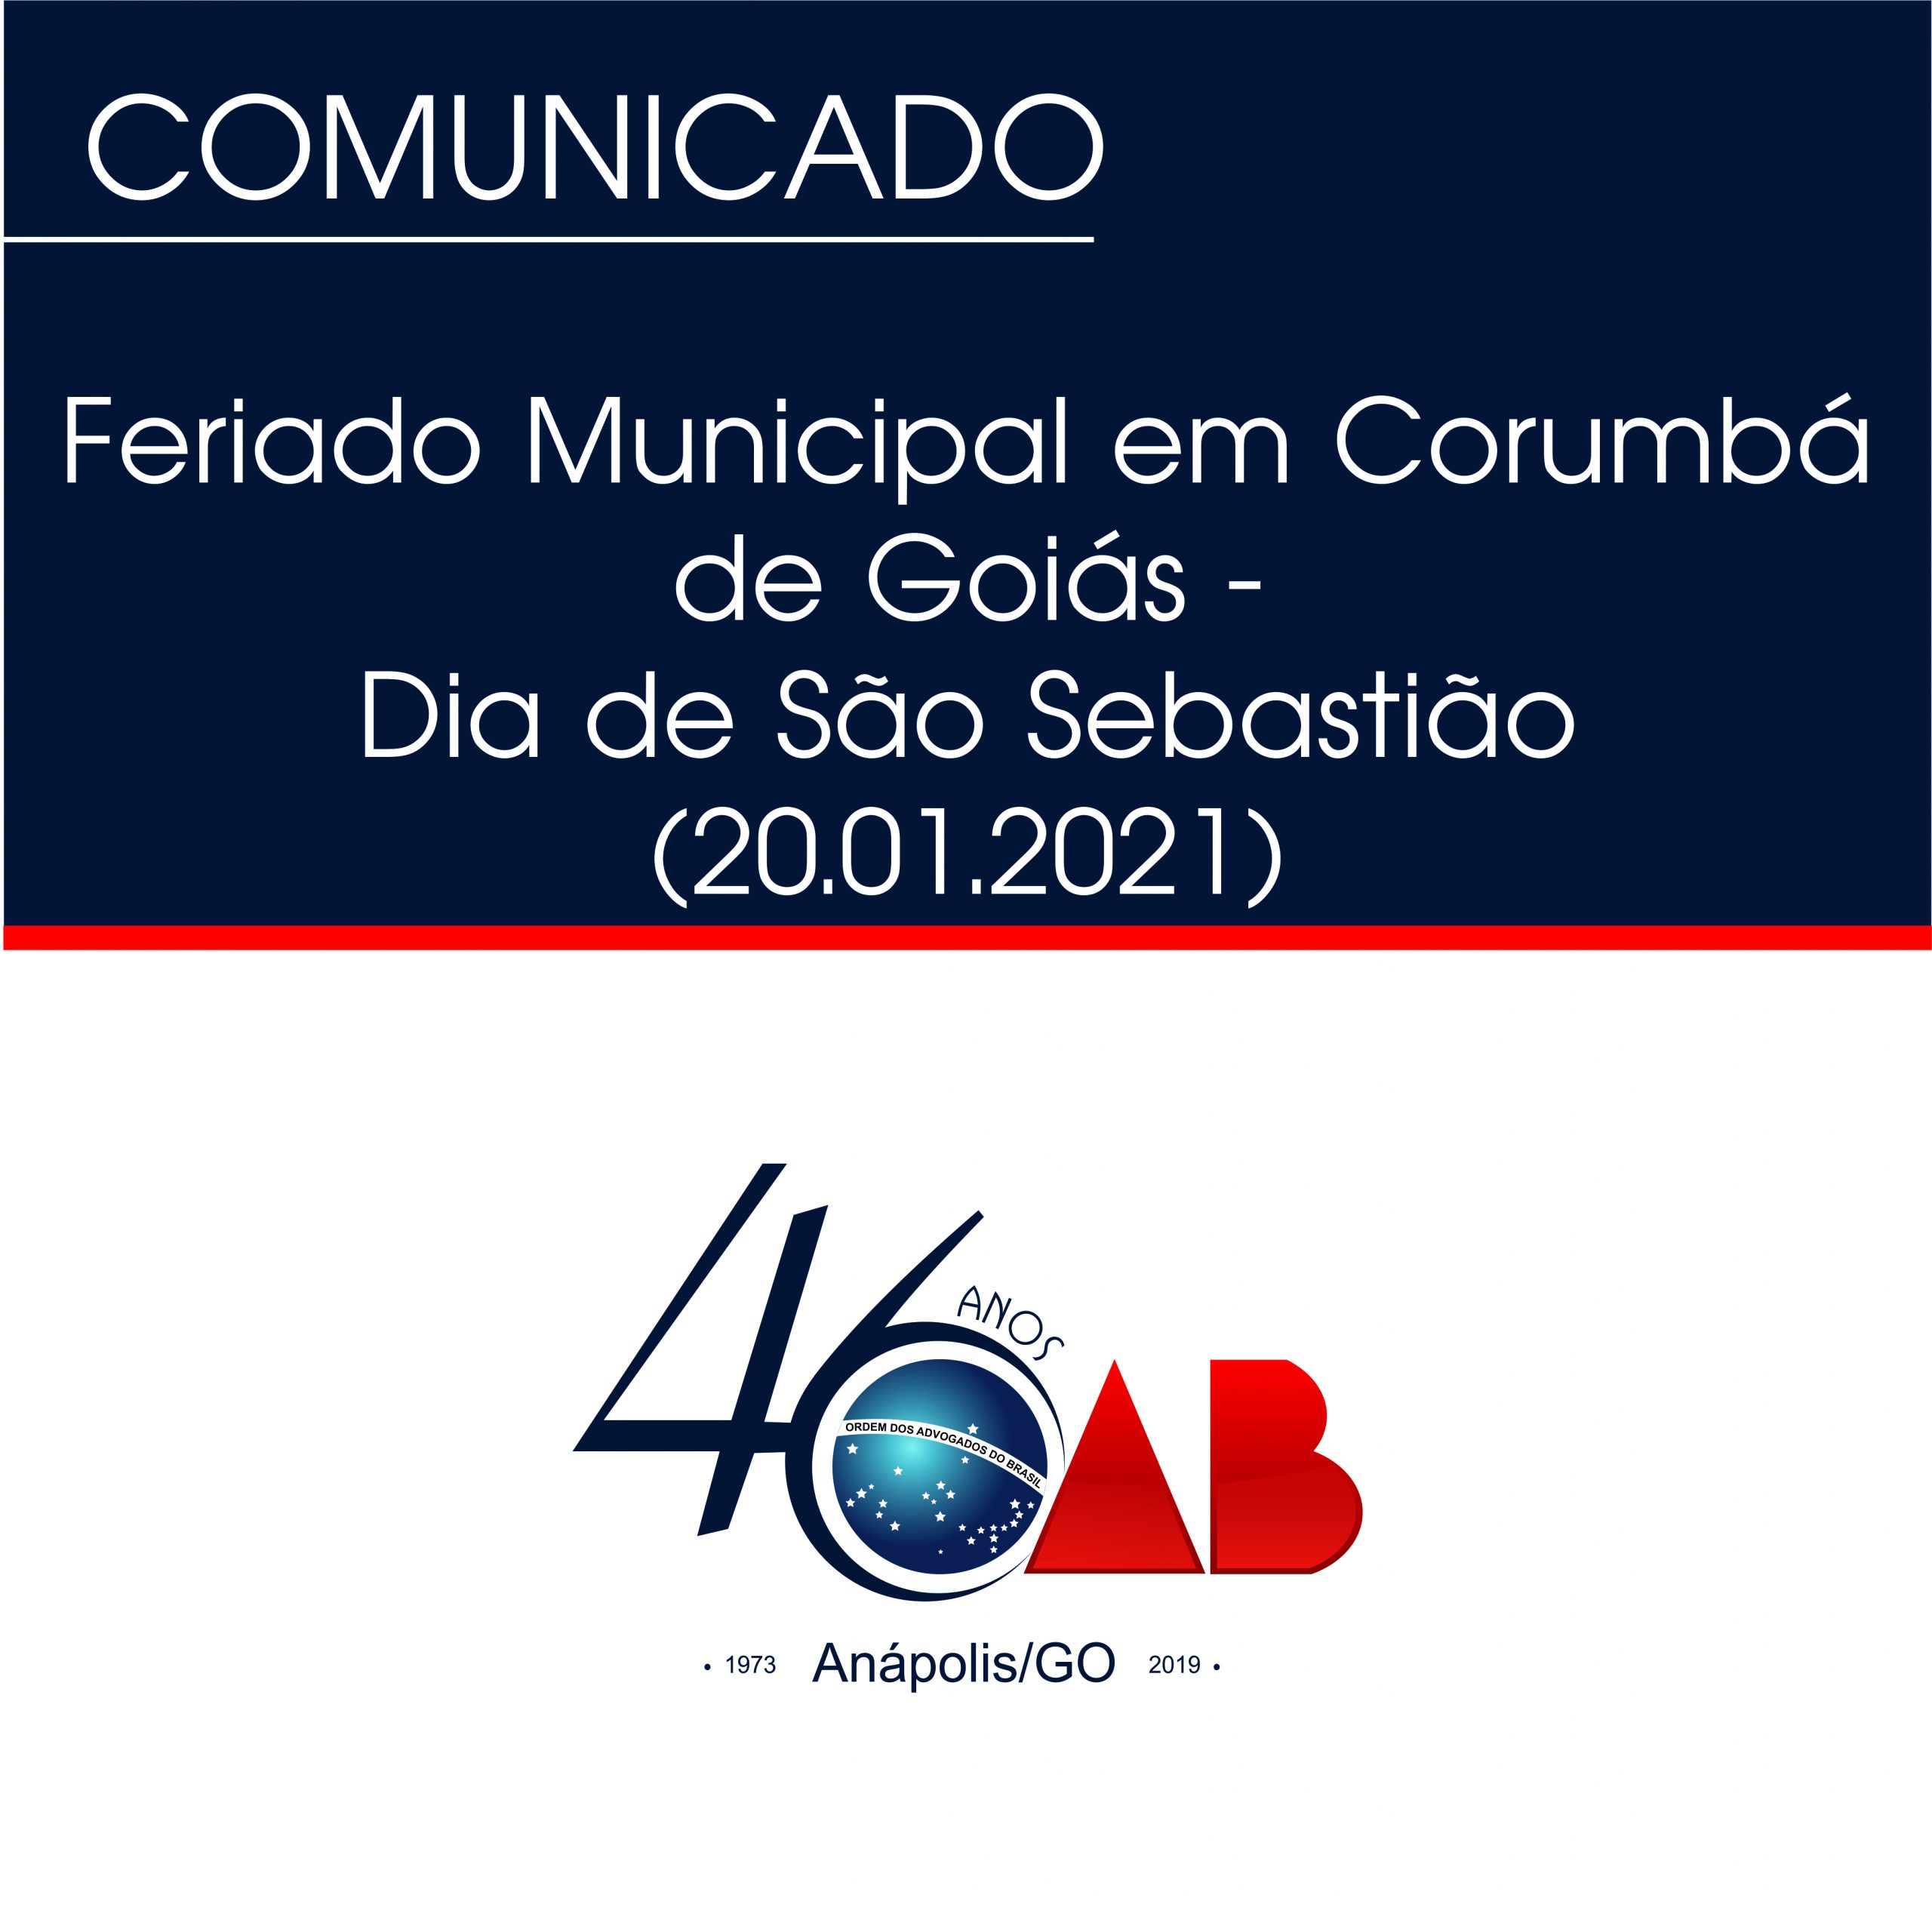 Feriado Municipal em Corumbá de Goiás – Dia de São Sebastião (20.01.2021)